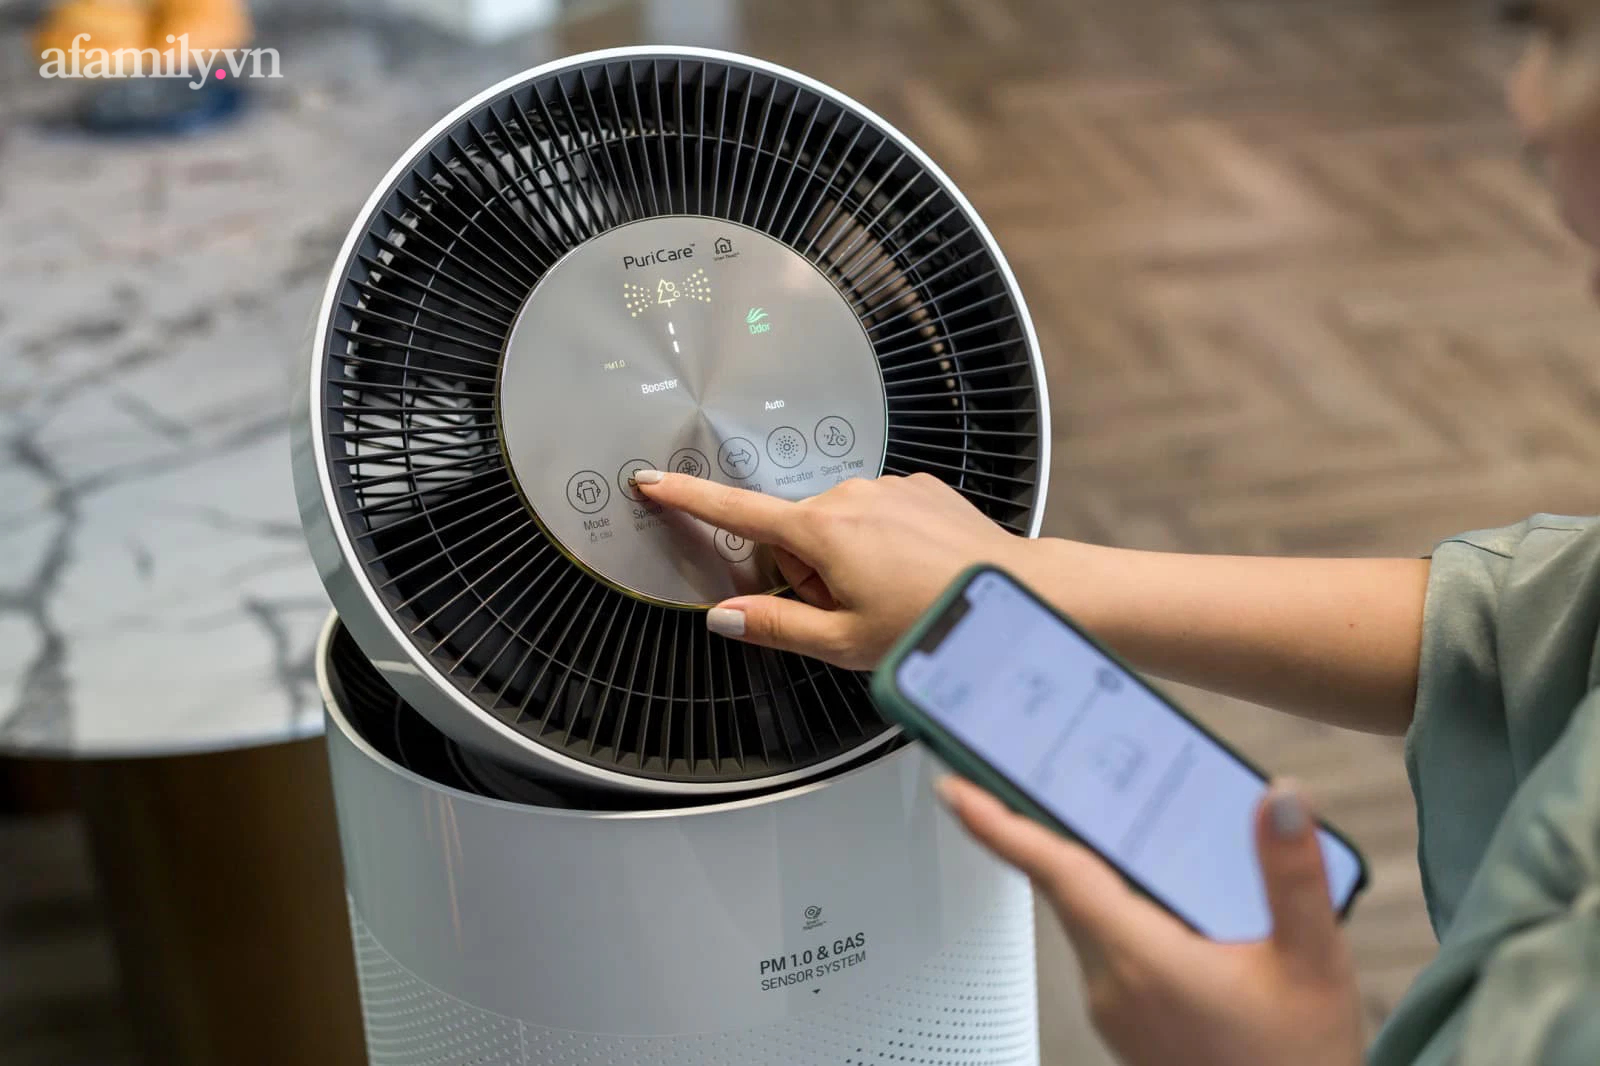 Admin Nghiện nhà review nhanh 5 món đồ công nghệ đang sử dụng: Từ máy lọc không khí đến máy giặt sấy chị em có thể 